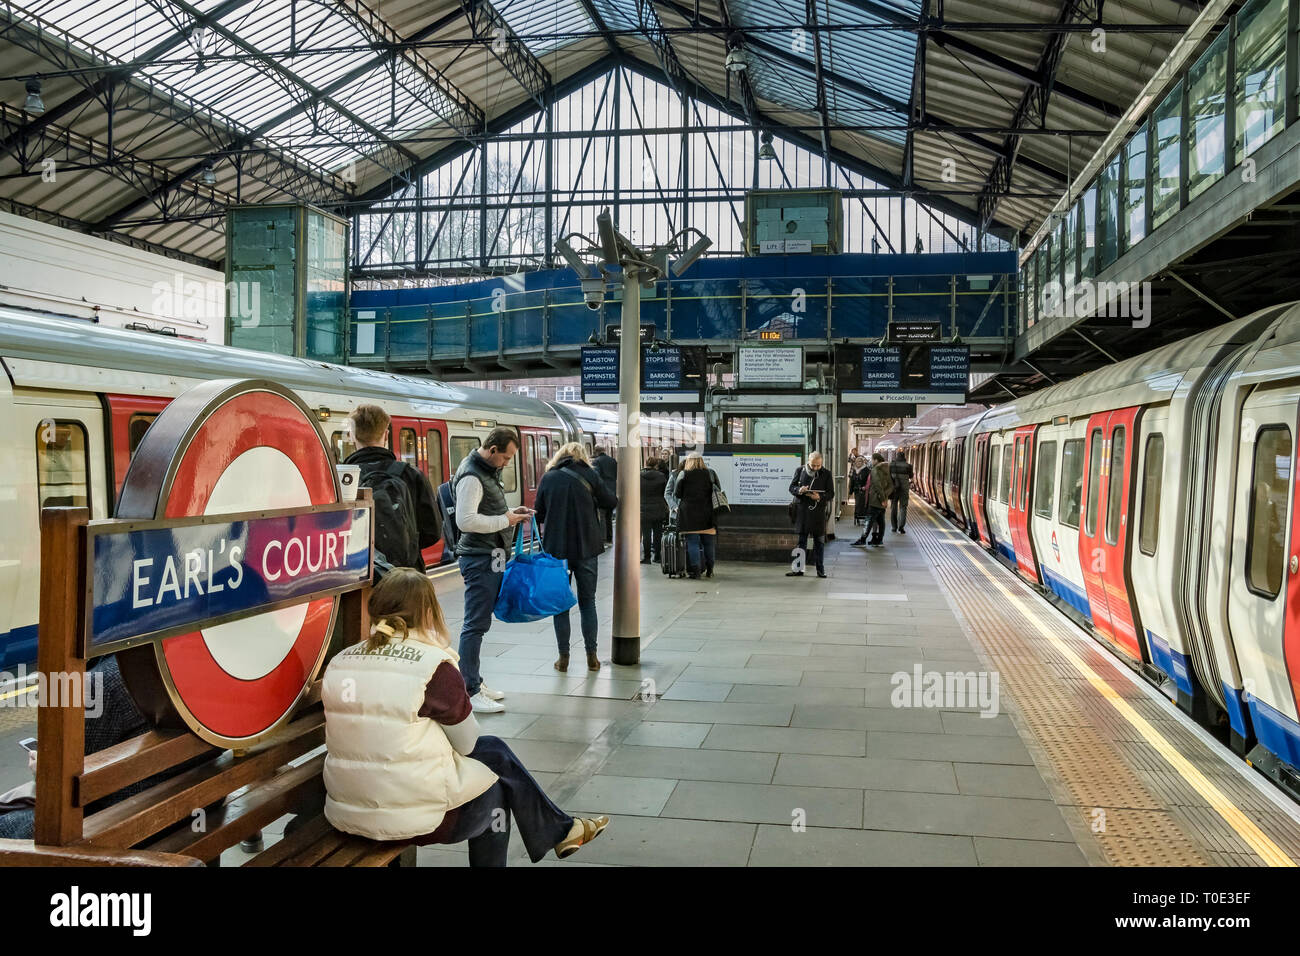 Lignes de trains de district en attente aux plates-formes de la station de métro Earls court , Londres, Royaume-Uni Banque D'Images